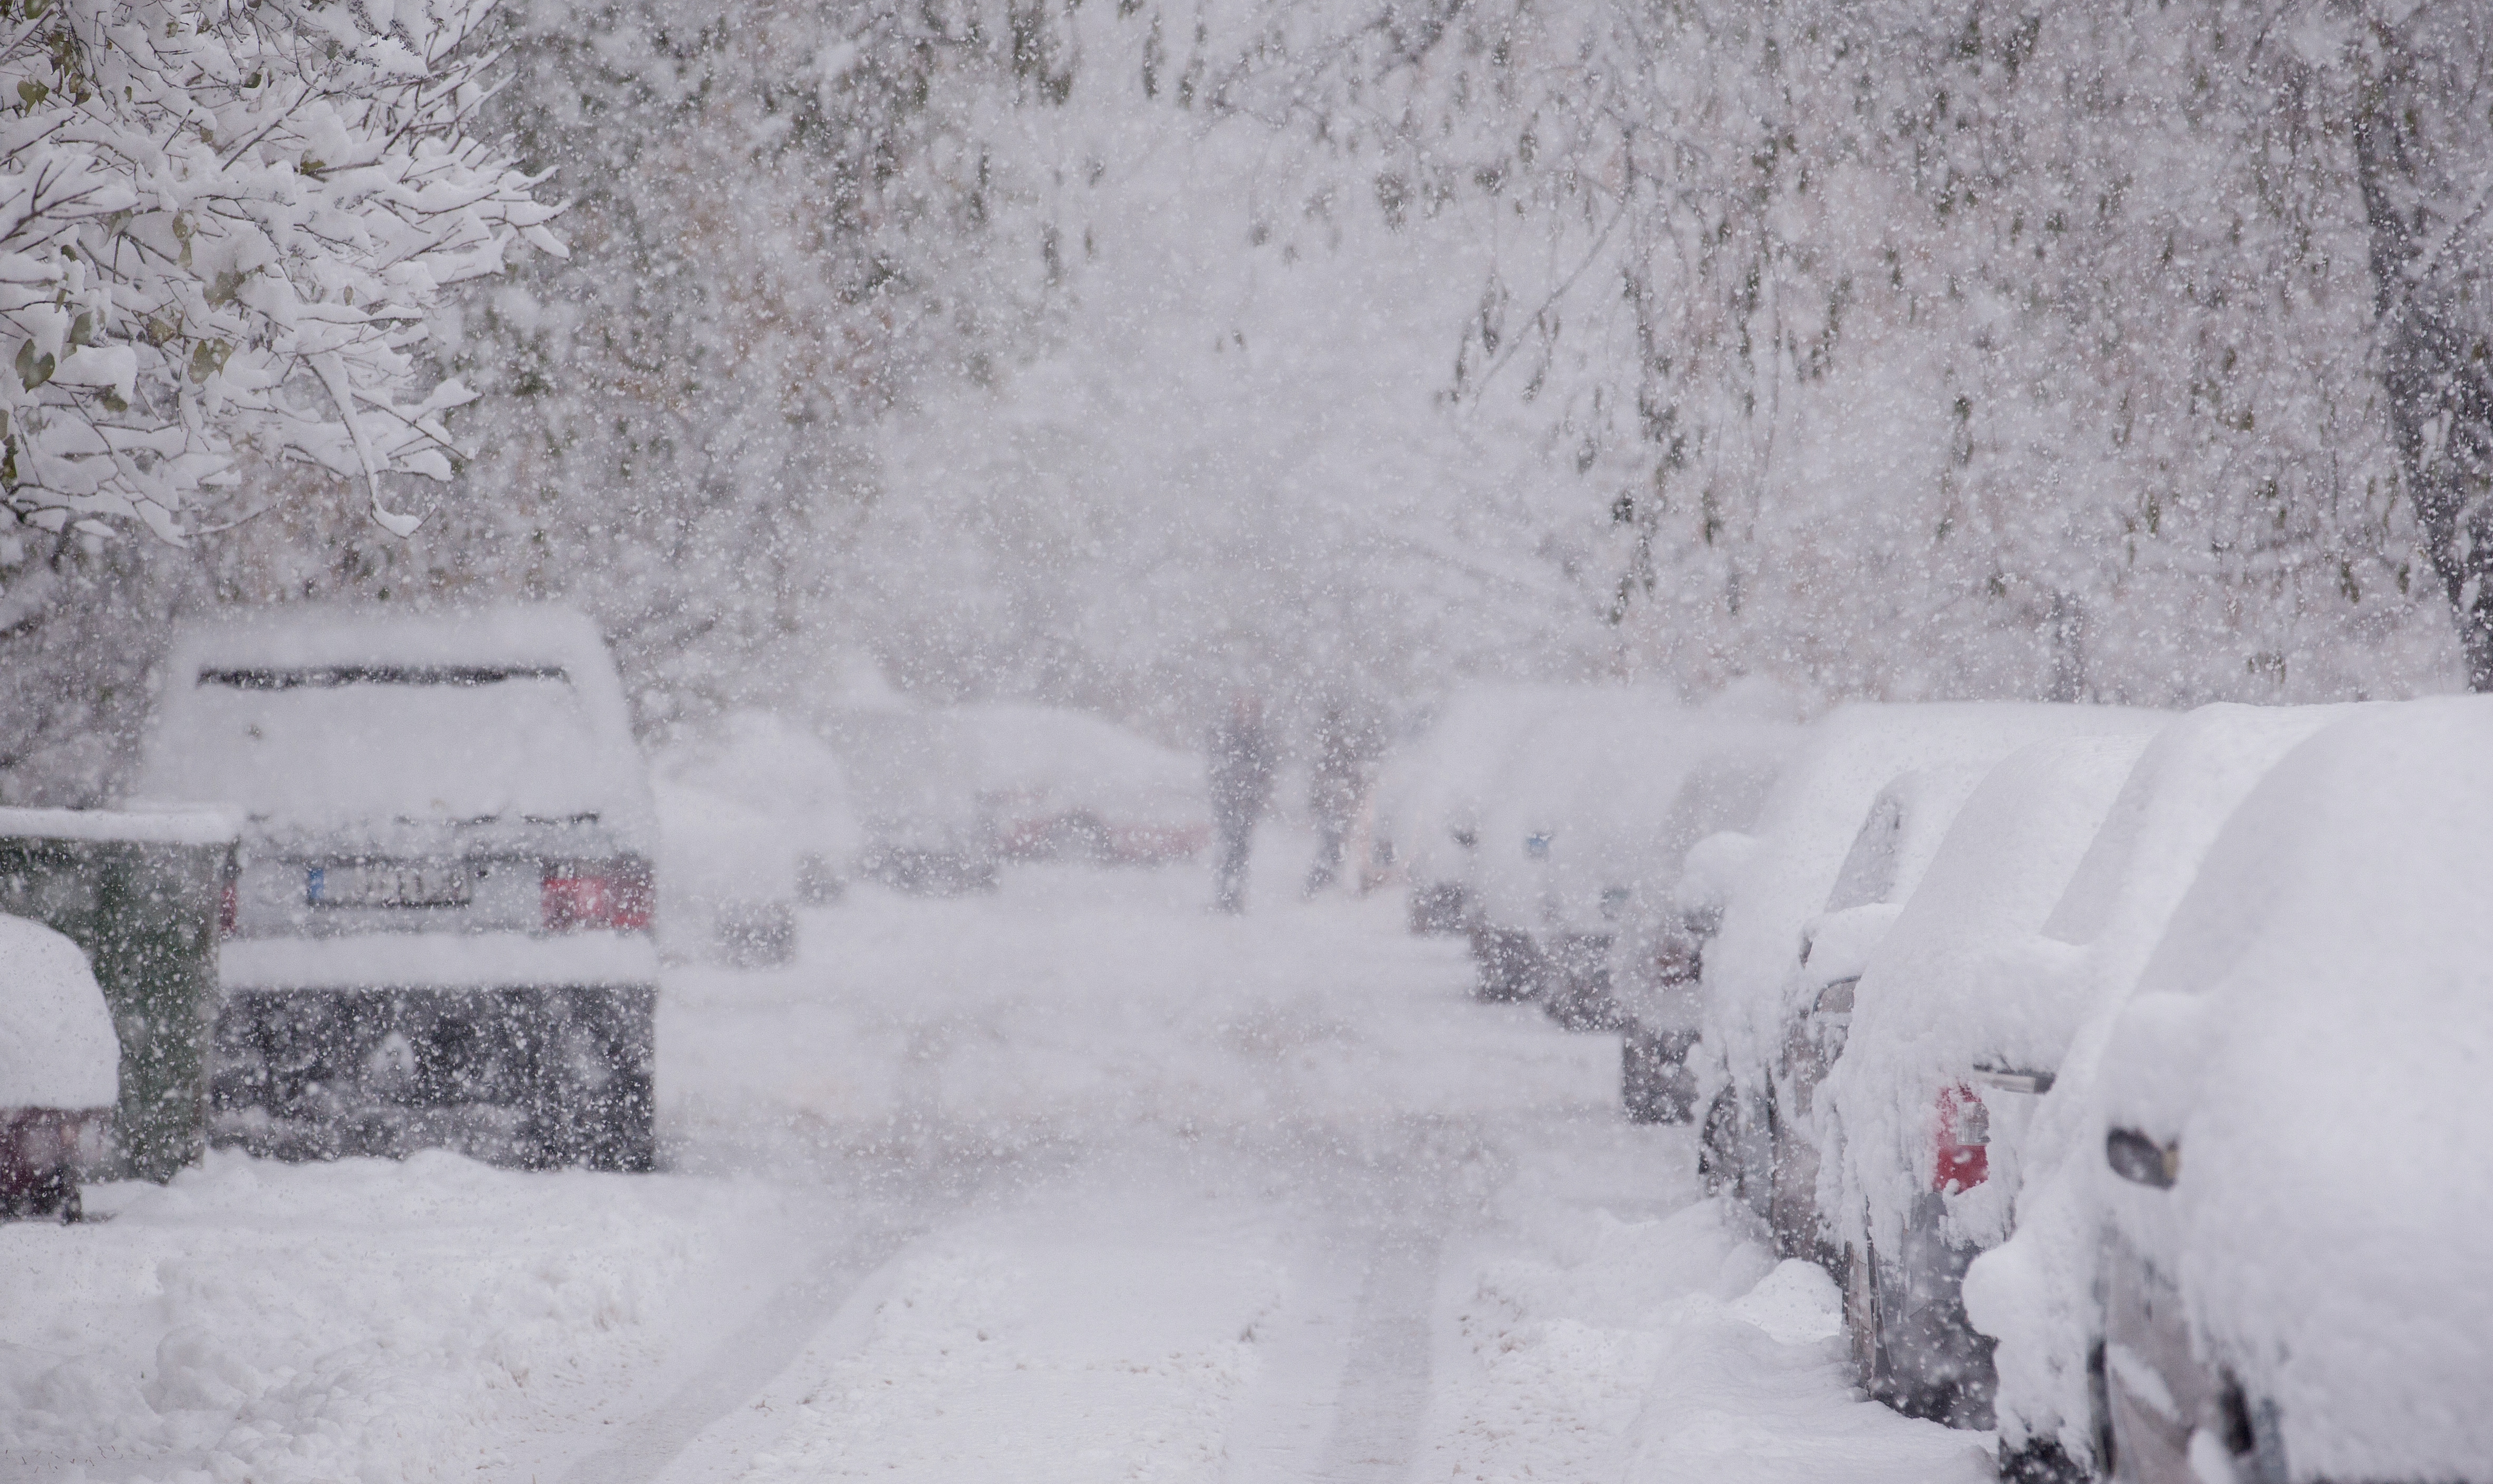 Les orages de neige sont possibles en France, mais plus courants aux États-Unis, comme ici. © Stoatphoto, Adobe Stock